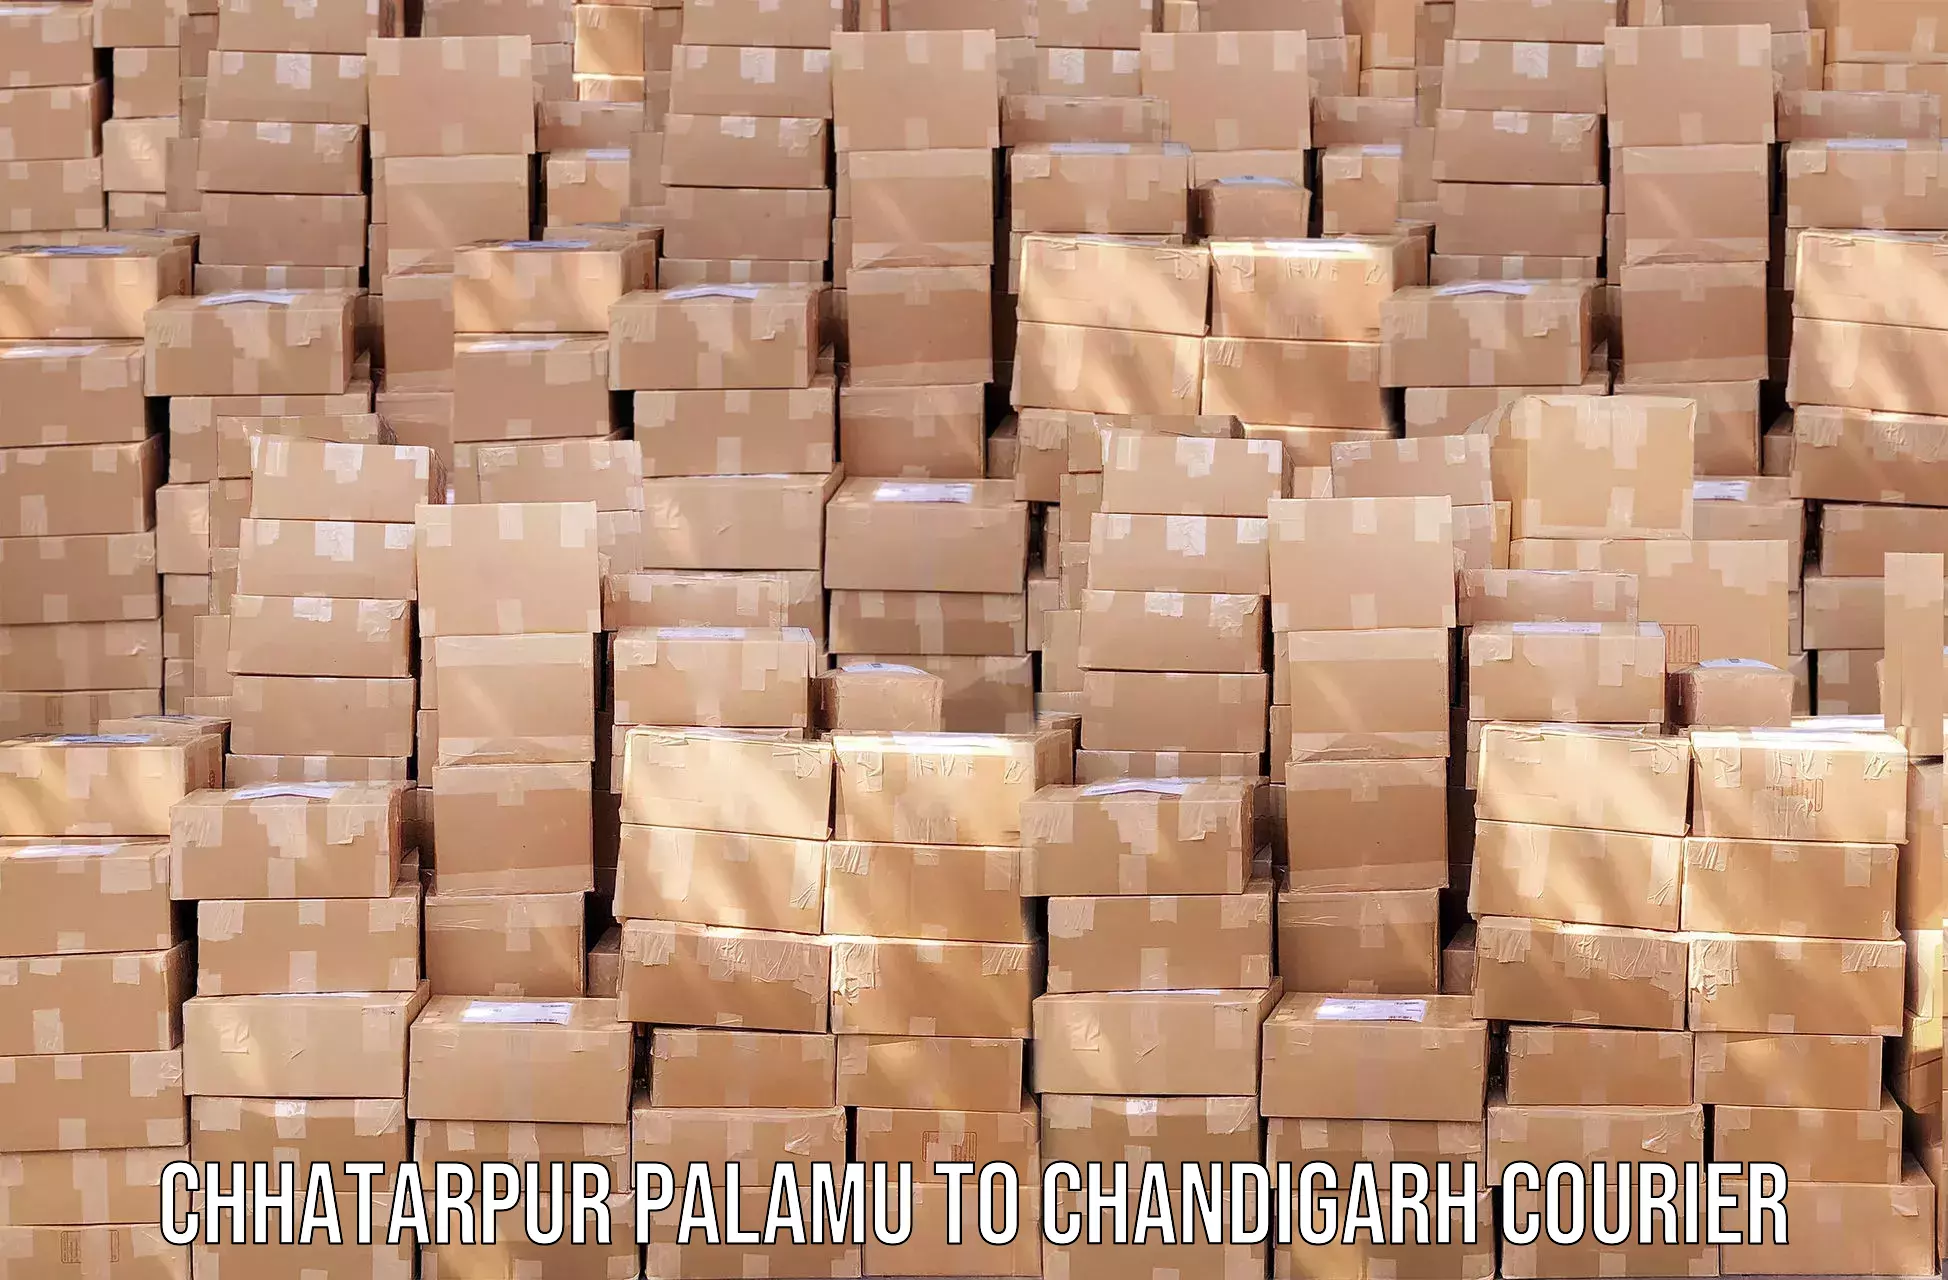 Courier membership Chhatarpur Palamu to Chandigarh